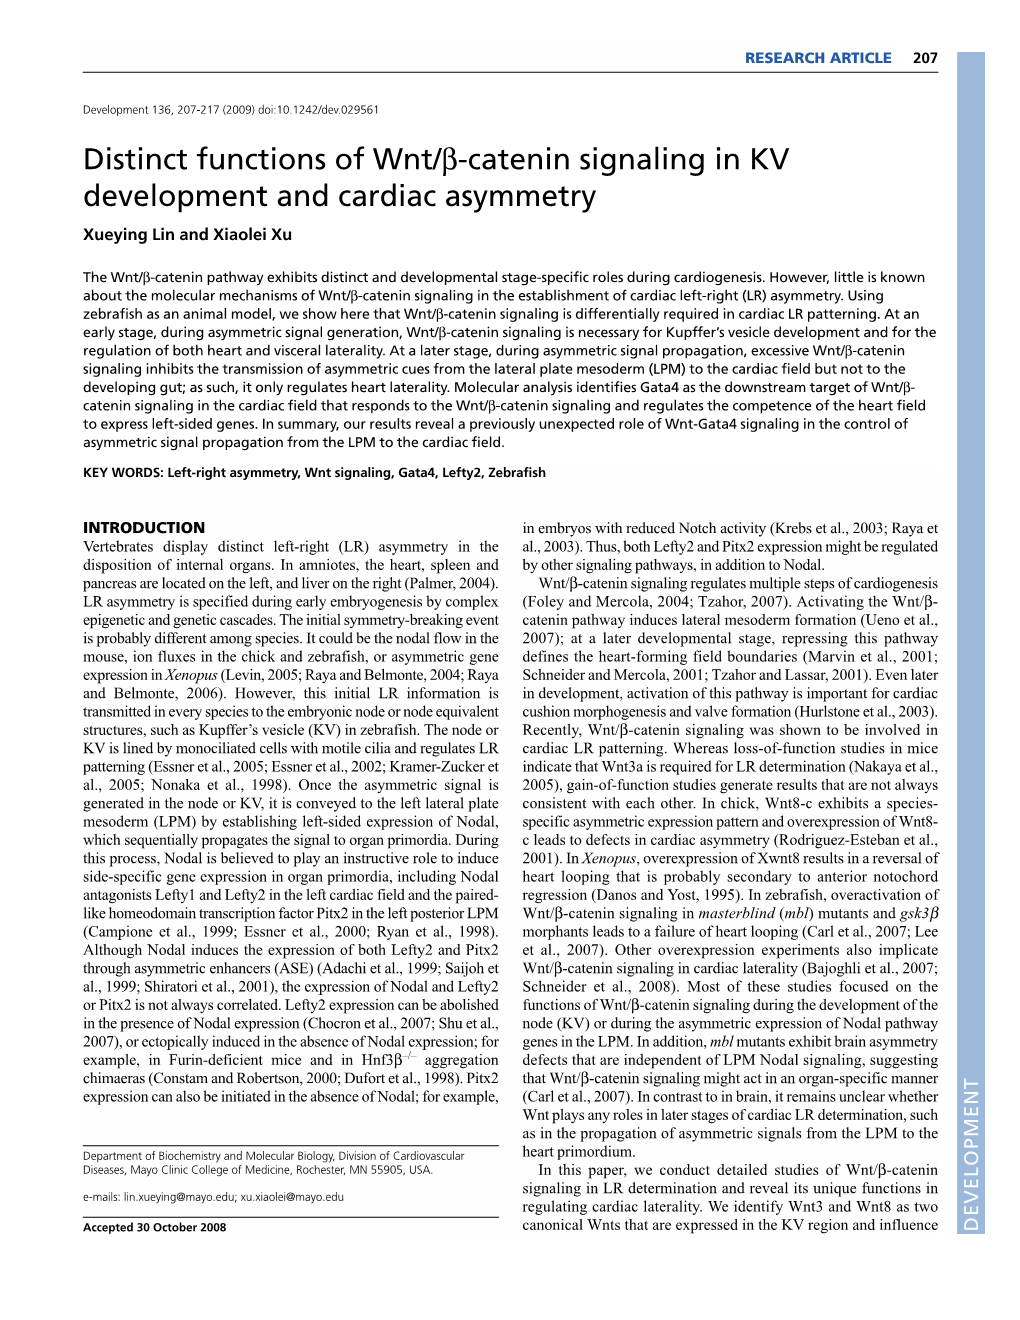 Distinct Functions of Wnt/Β-Catenin Signaling in KV Development and Cardiac Asymmetry Xueying Lin and Xiaolei Xu